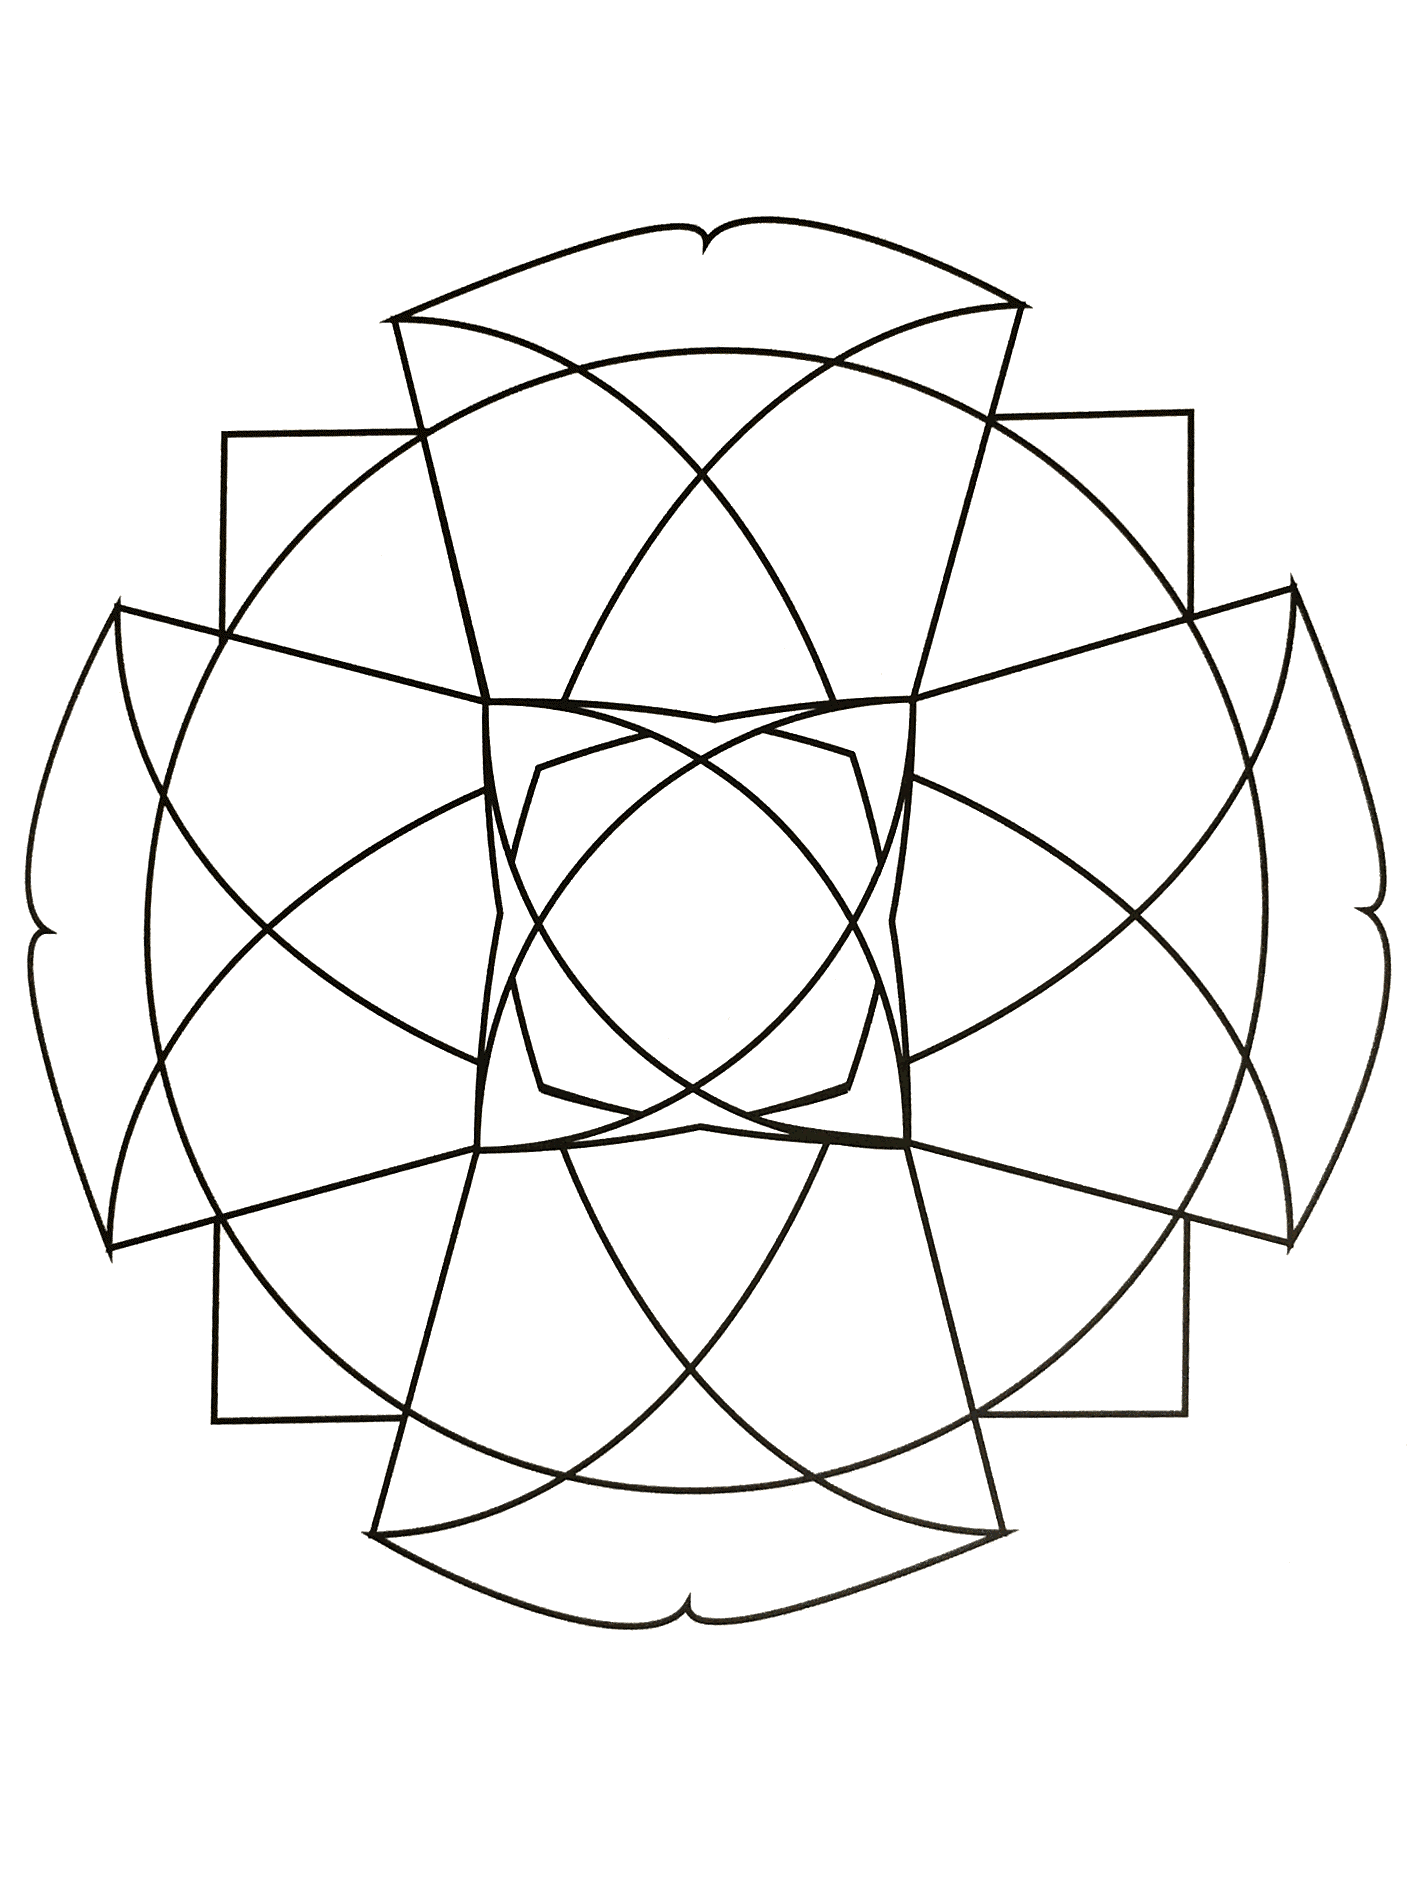 Mandala para imprimir representando uma grande cruz e outras formas geométricas (triângulo, losango...).